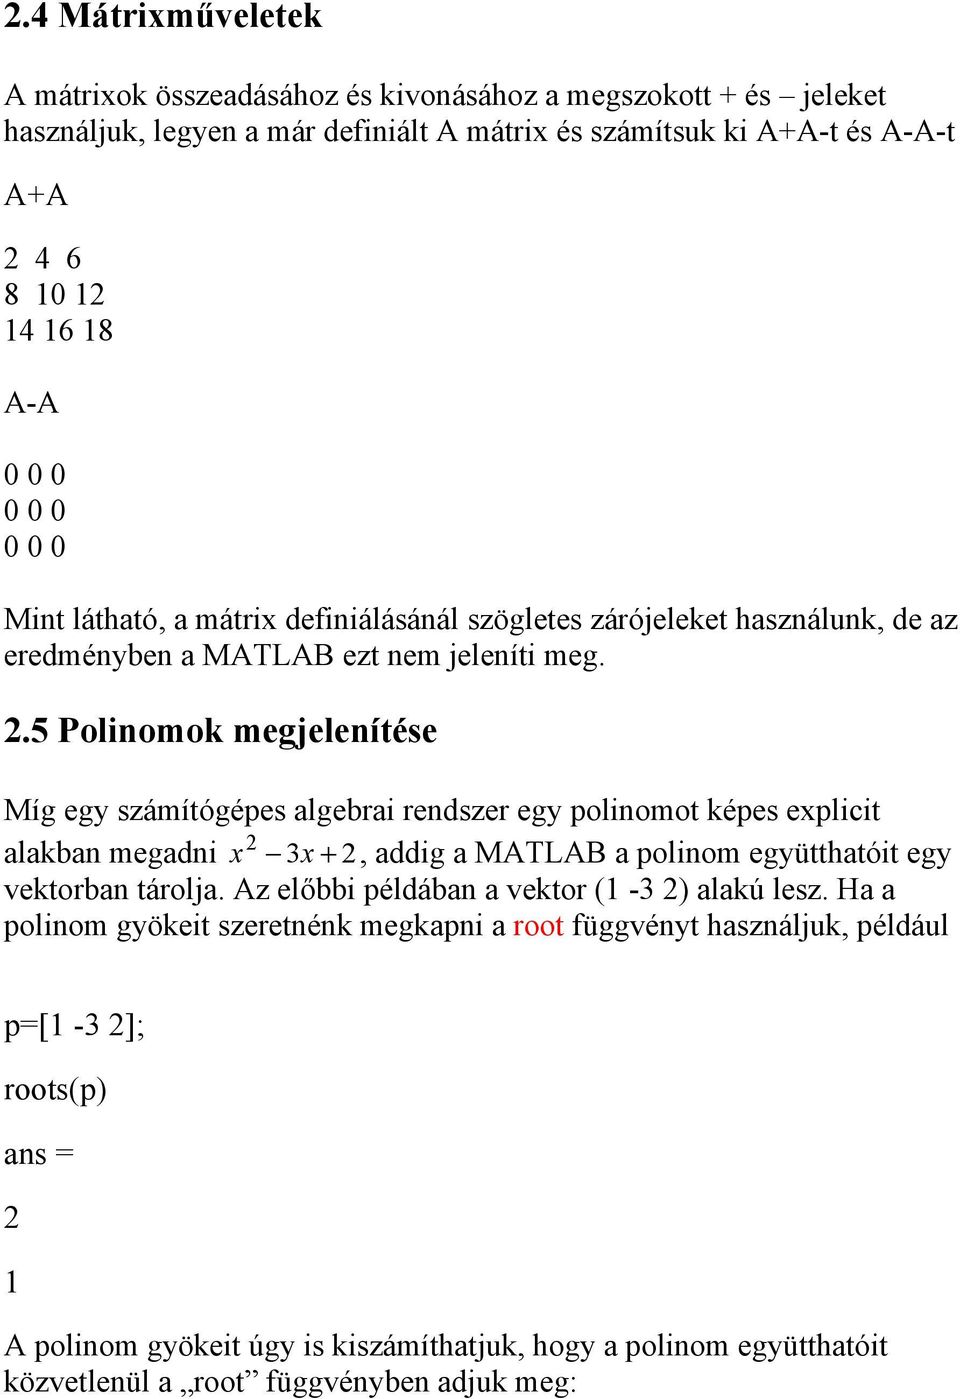 5 Polinomok megjelenítése Míg egy számítógépes algebrai rendszer egy polinomot képes explicit 2 alakban megadni x 3x + 2, addig a MATLAB a polinom együtthatóit egy vektorban tárolja.